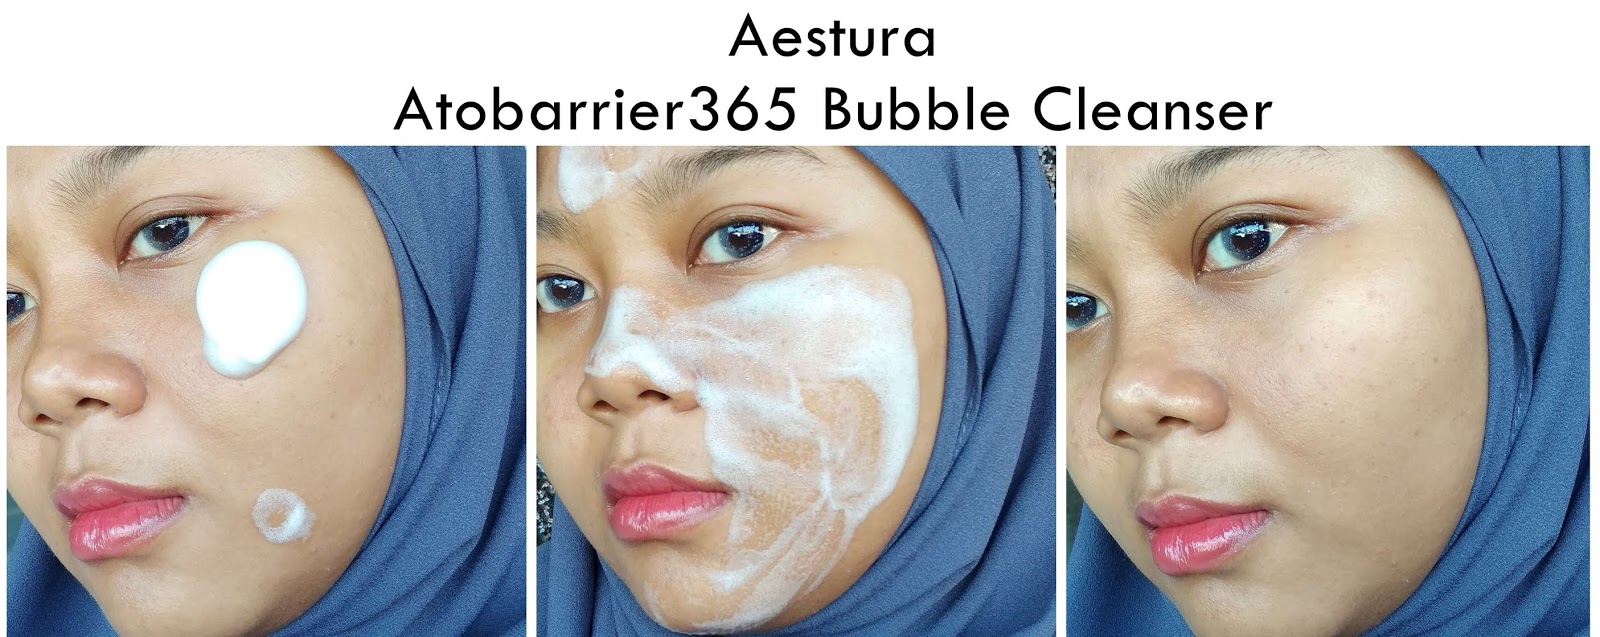 aestura-atobarrier365-bubble-cleanser